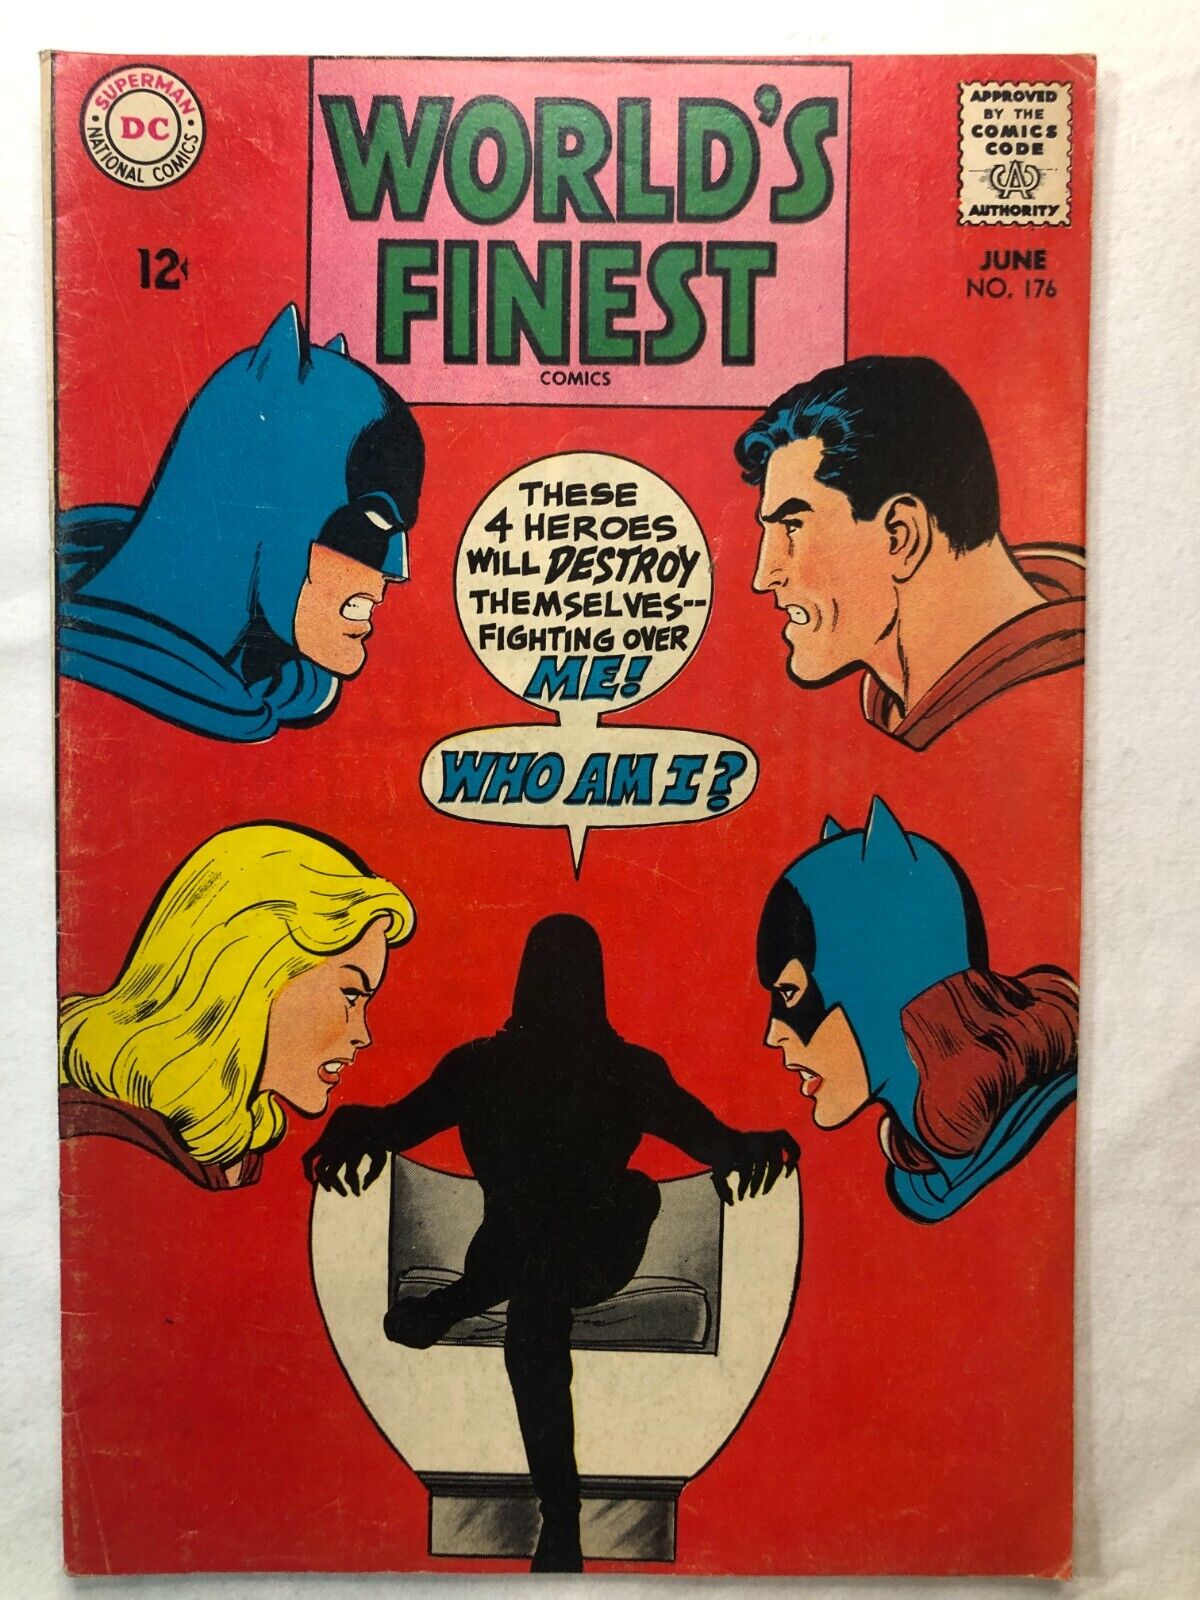 WORLDS FINEST #176 June 1968 Vintage DC Comics Silver Age Batman Superman